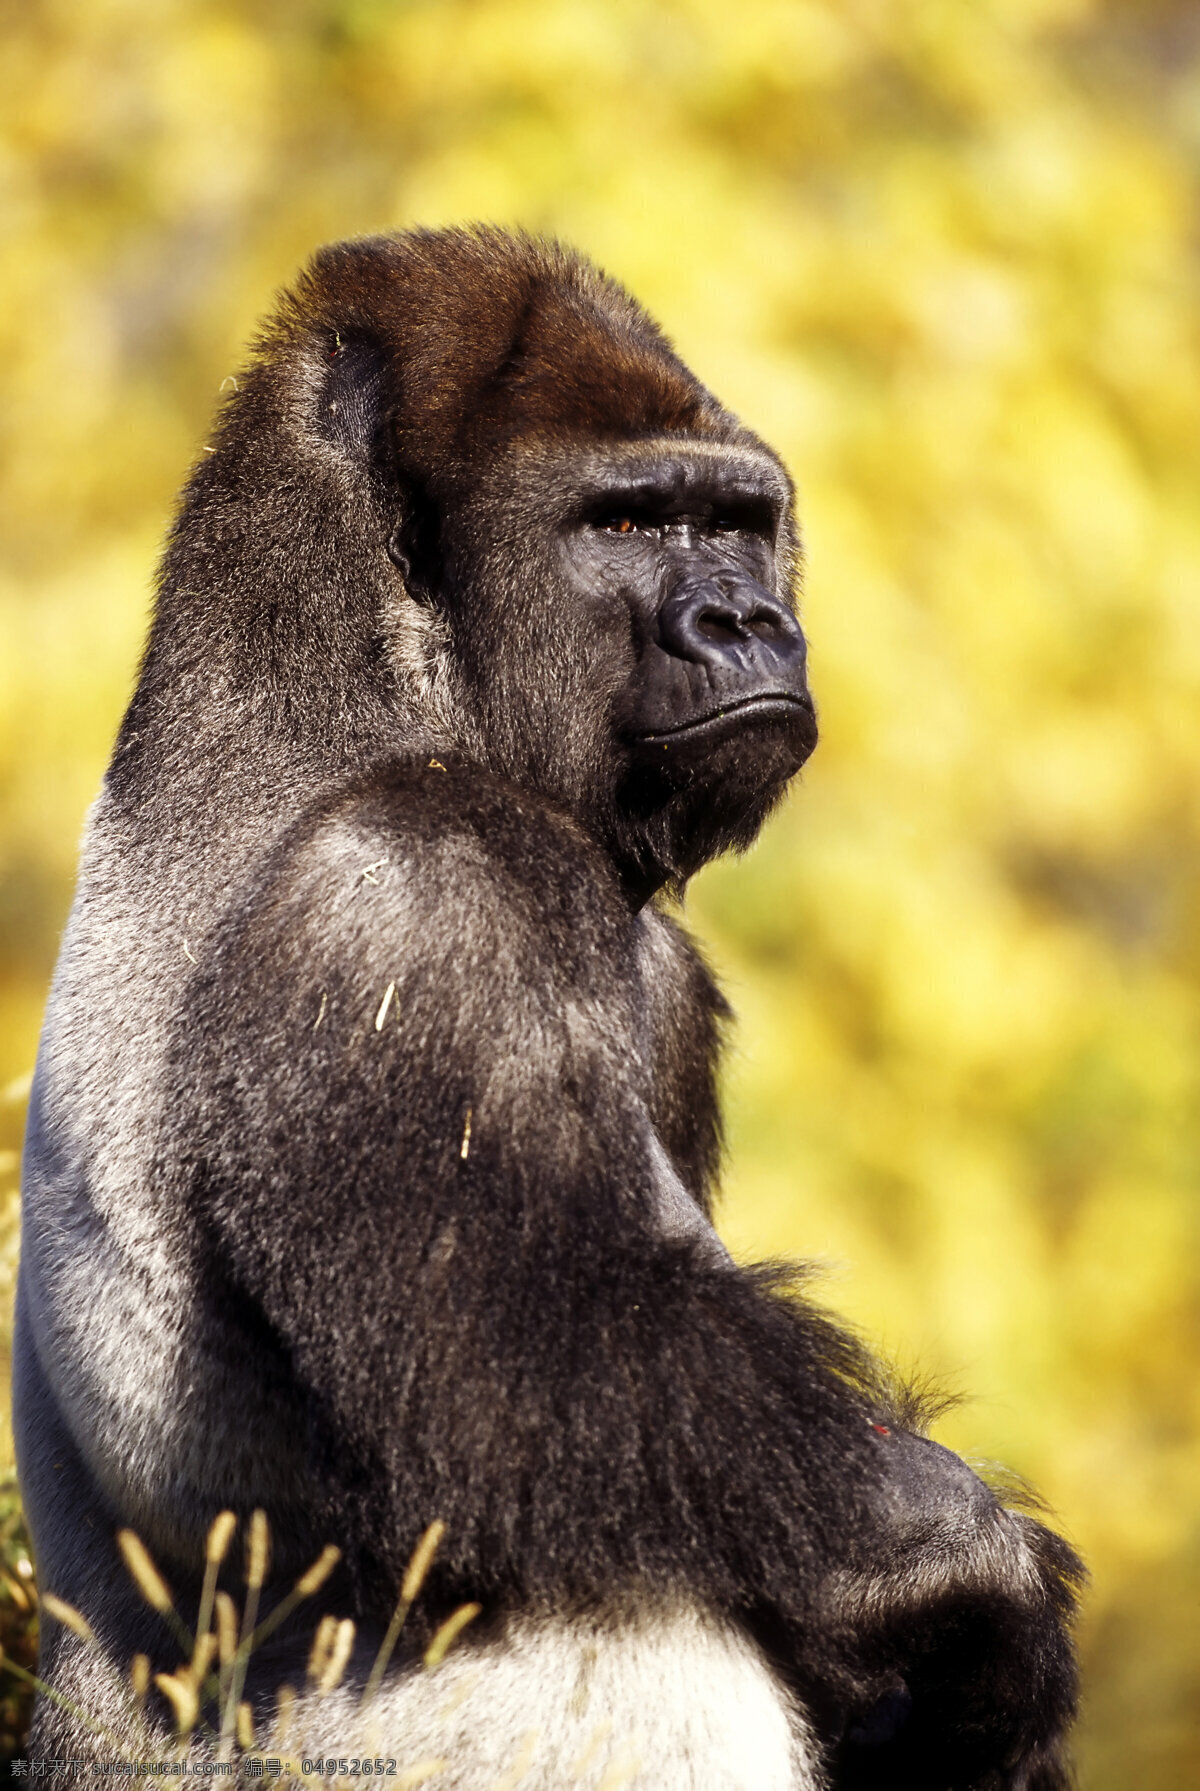 黑猩猩 大猩猩 野生动物 动物世界 摄影图 陆地动物 生物世界